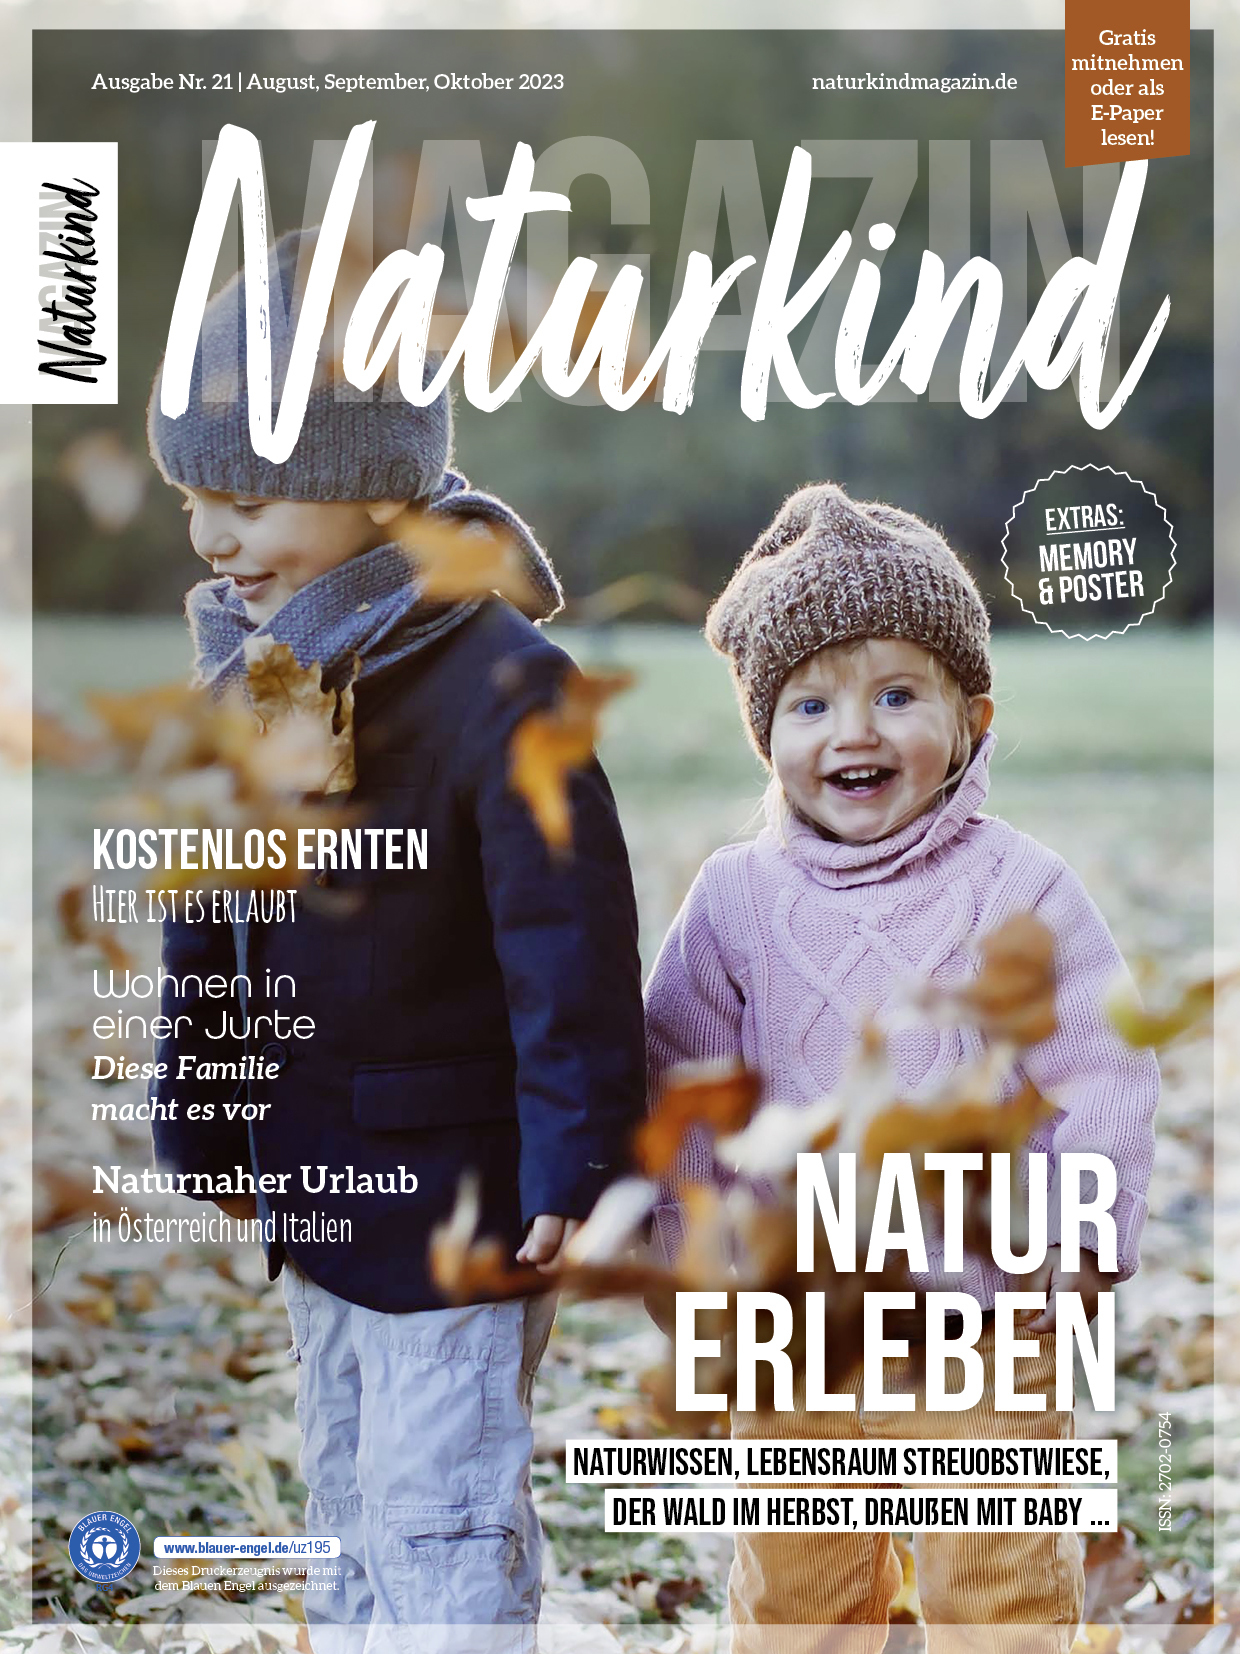 Naturkind Magazin ist eine Familienzeitschrift, ein Elternmagazin